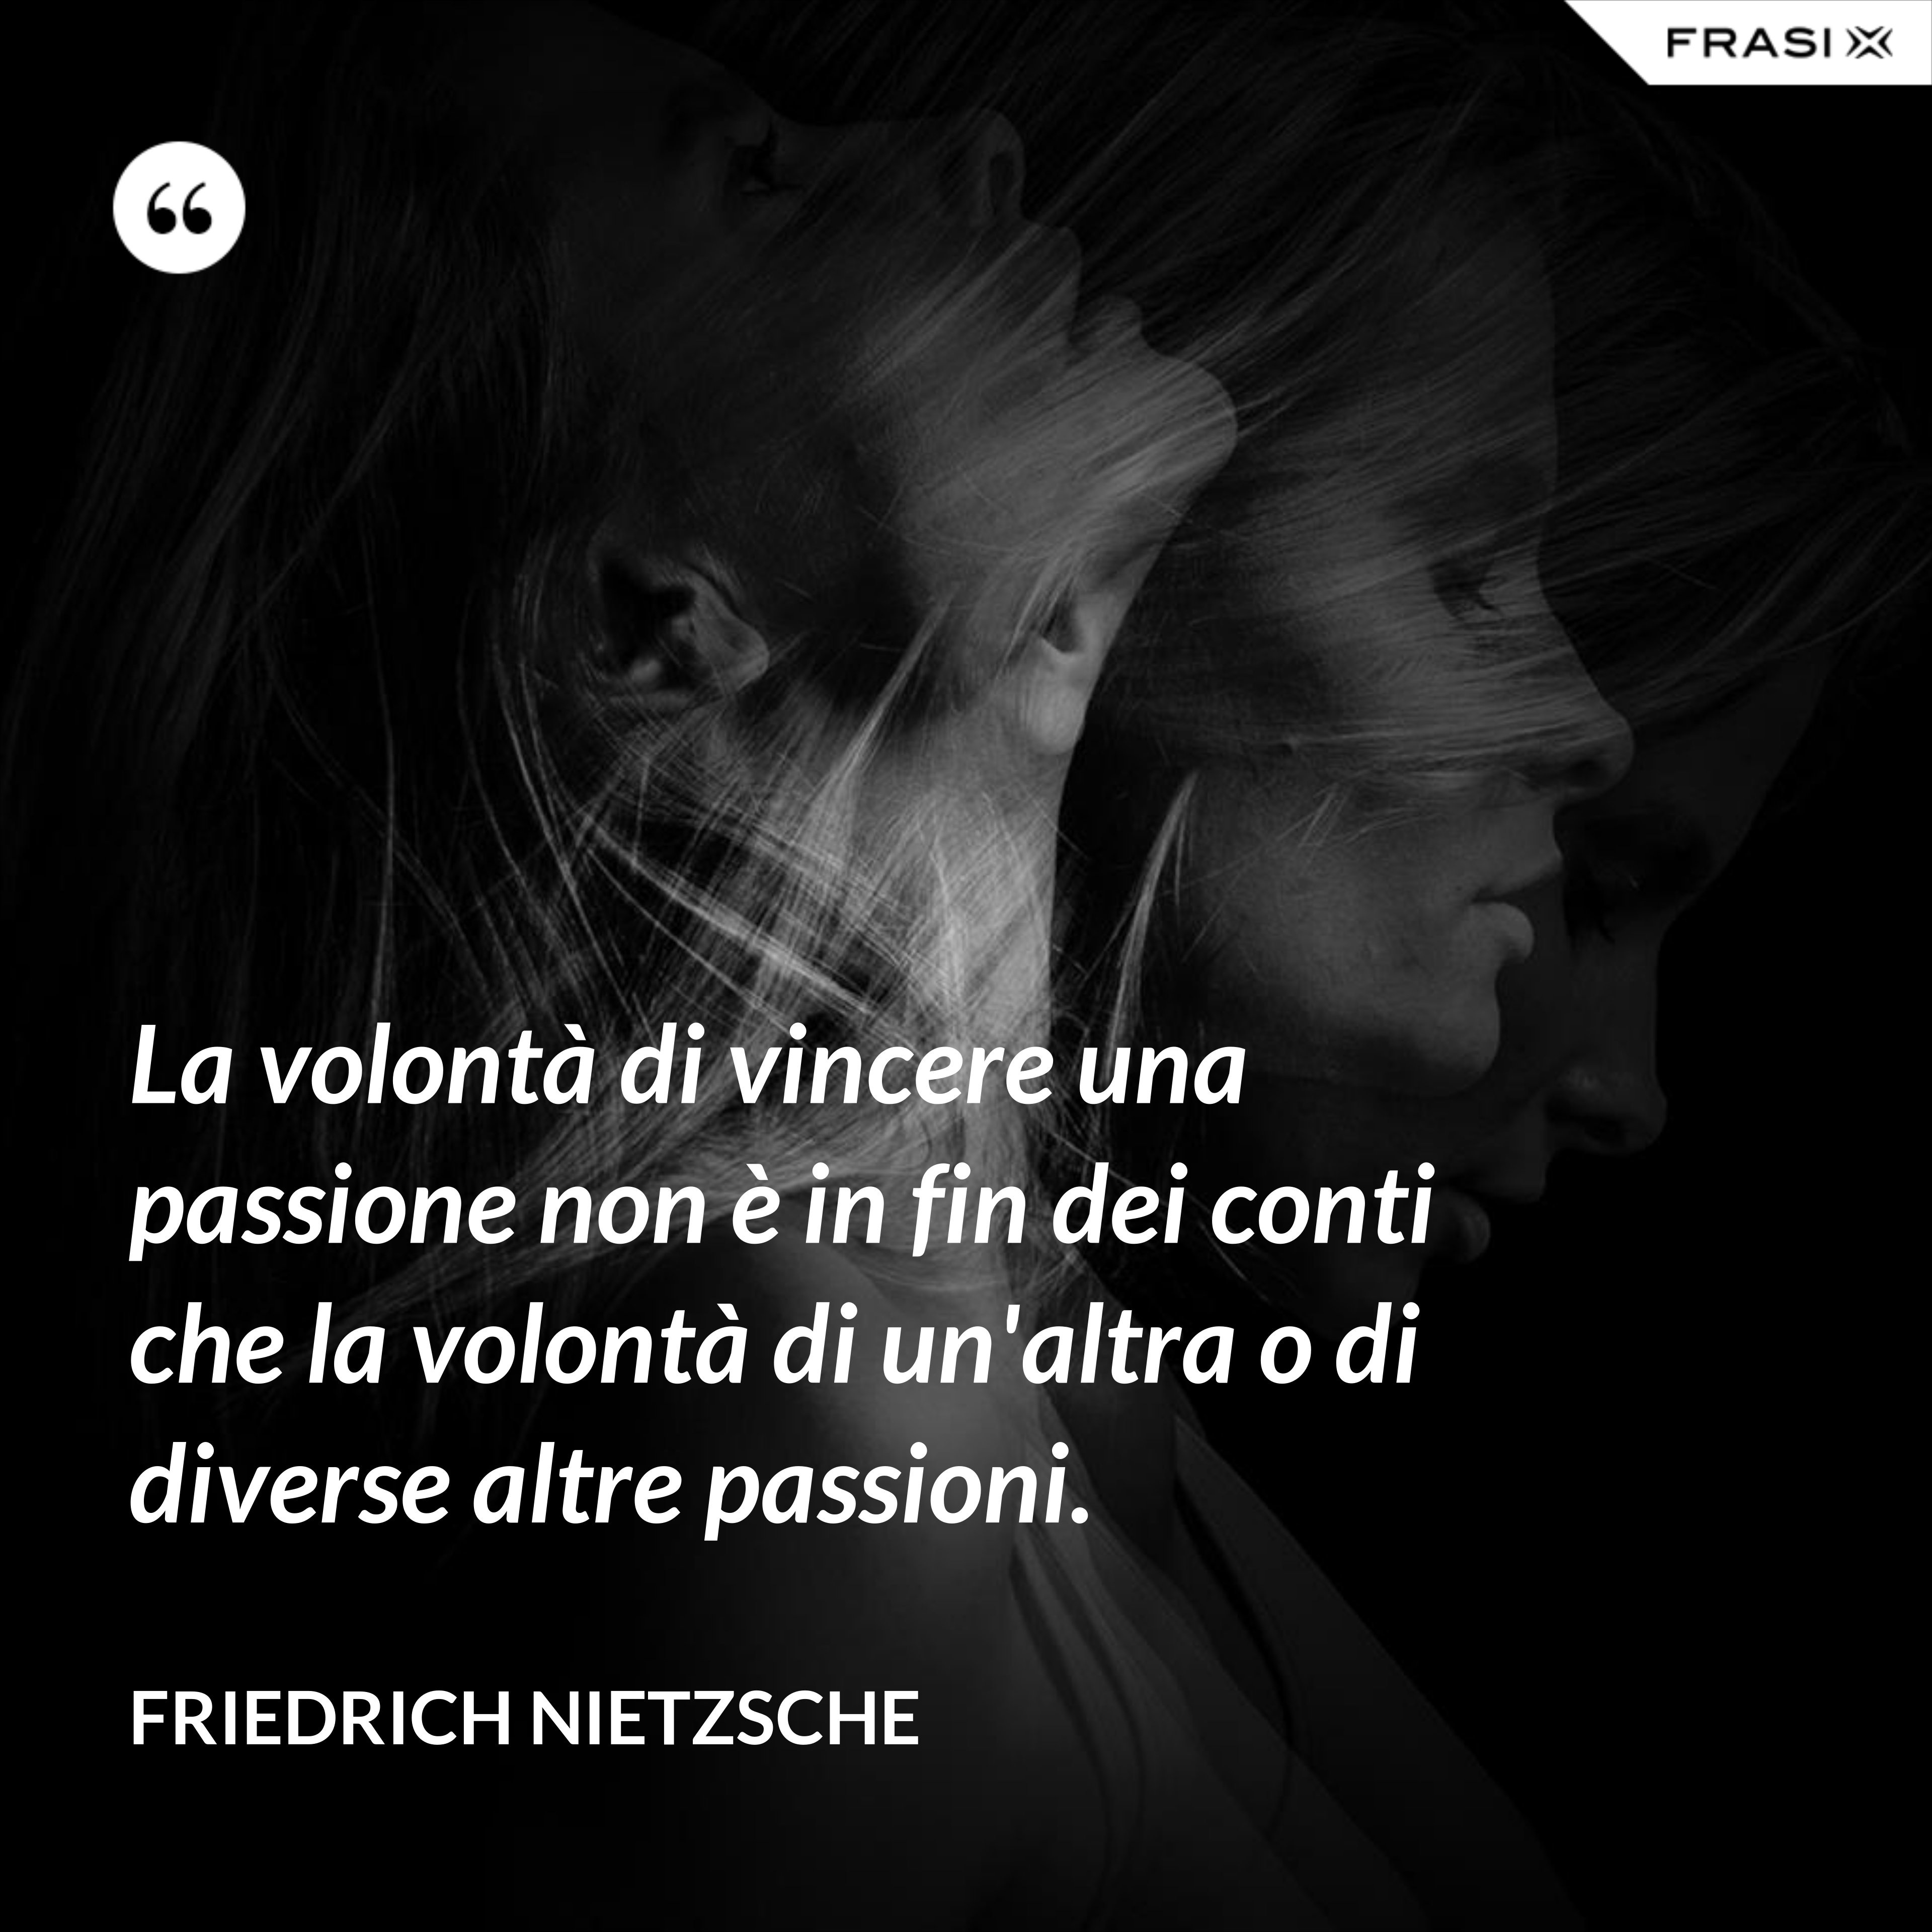 La volontà di vincere una passione non è in fin dei conti che la volontà di un'altra o di diverse altre passioni. - Friedrich Nietzsche